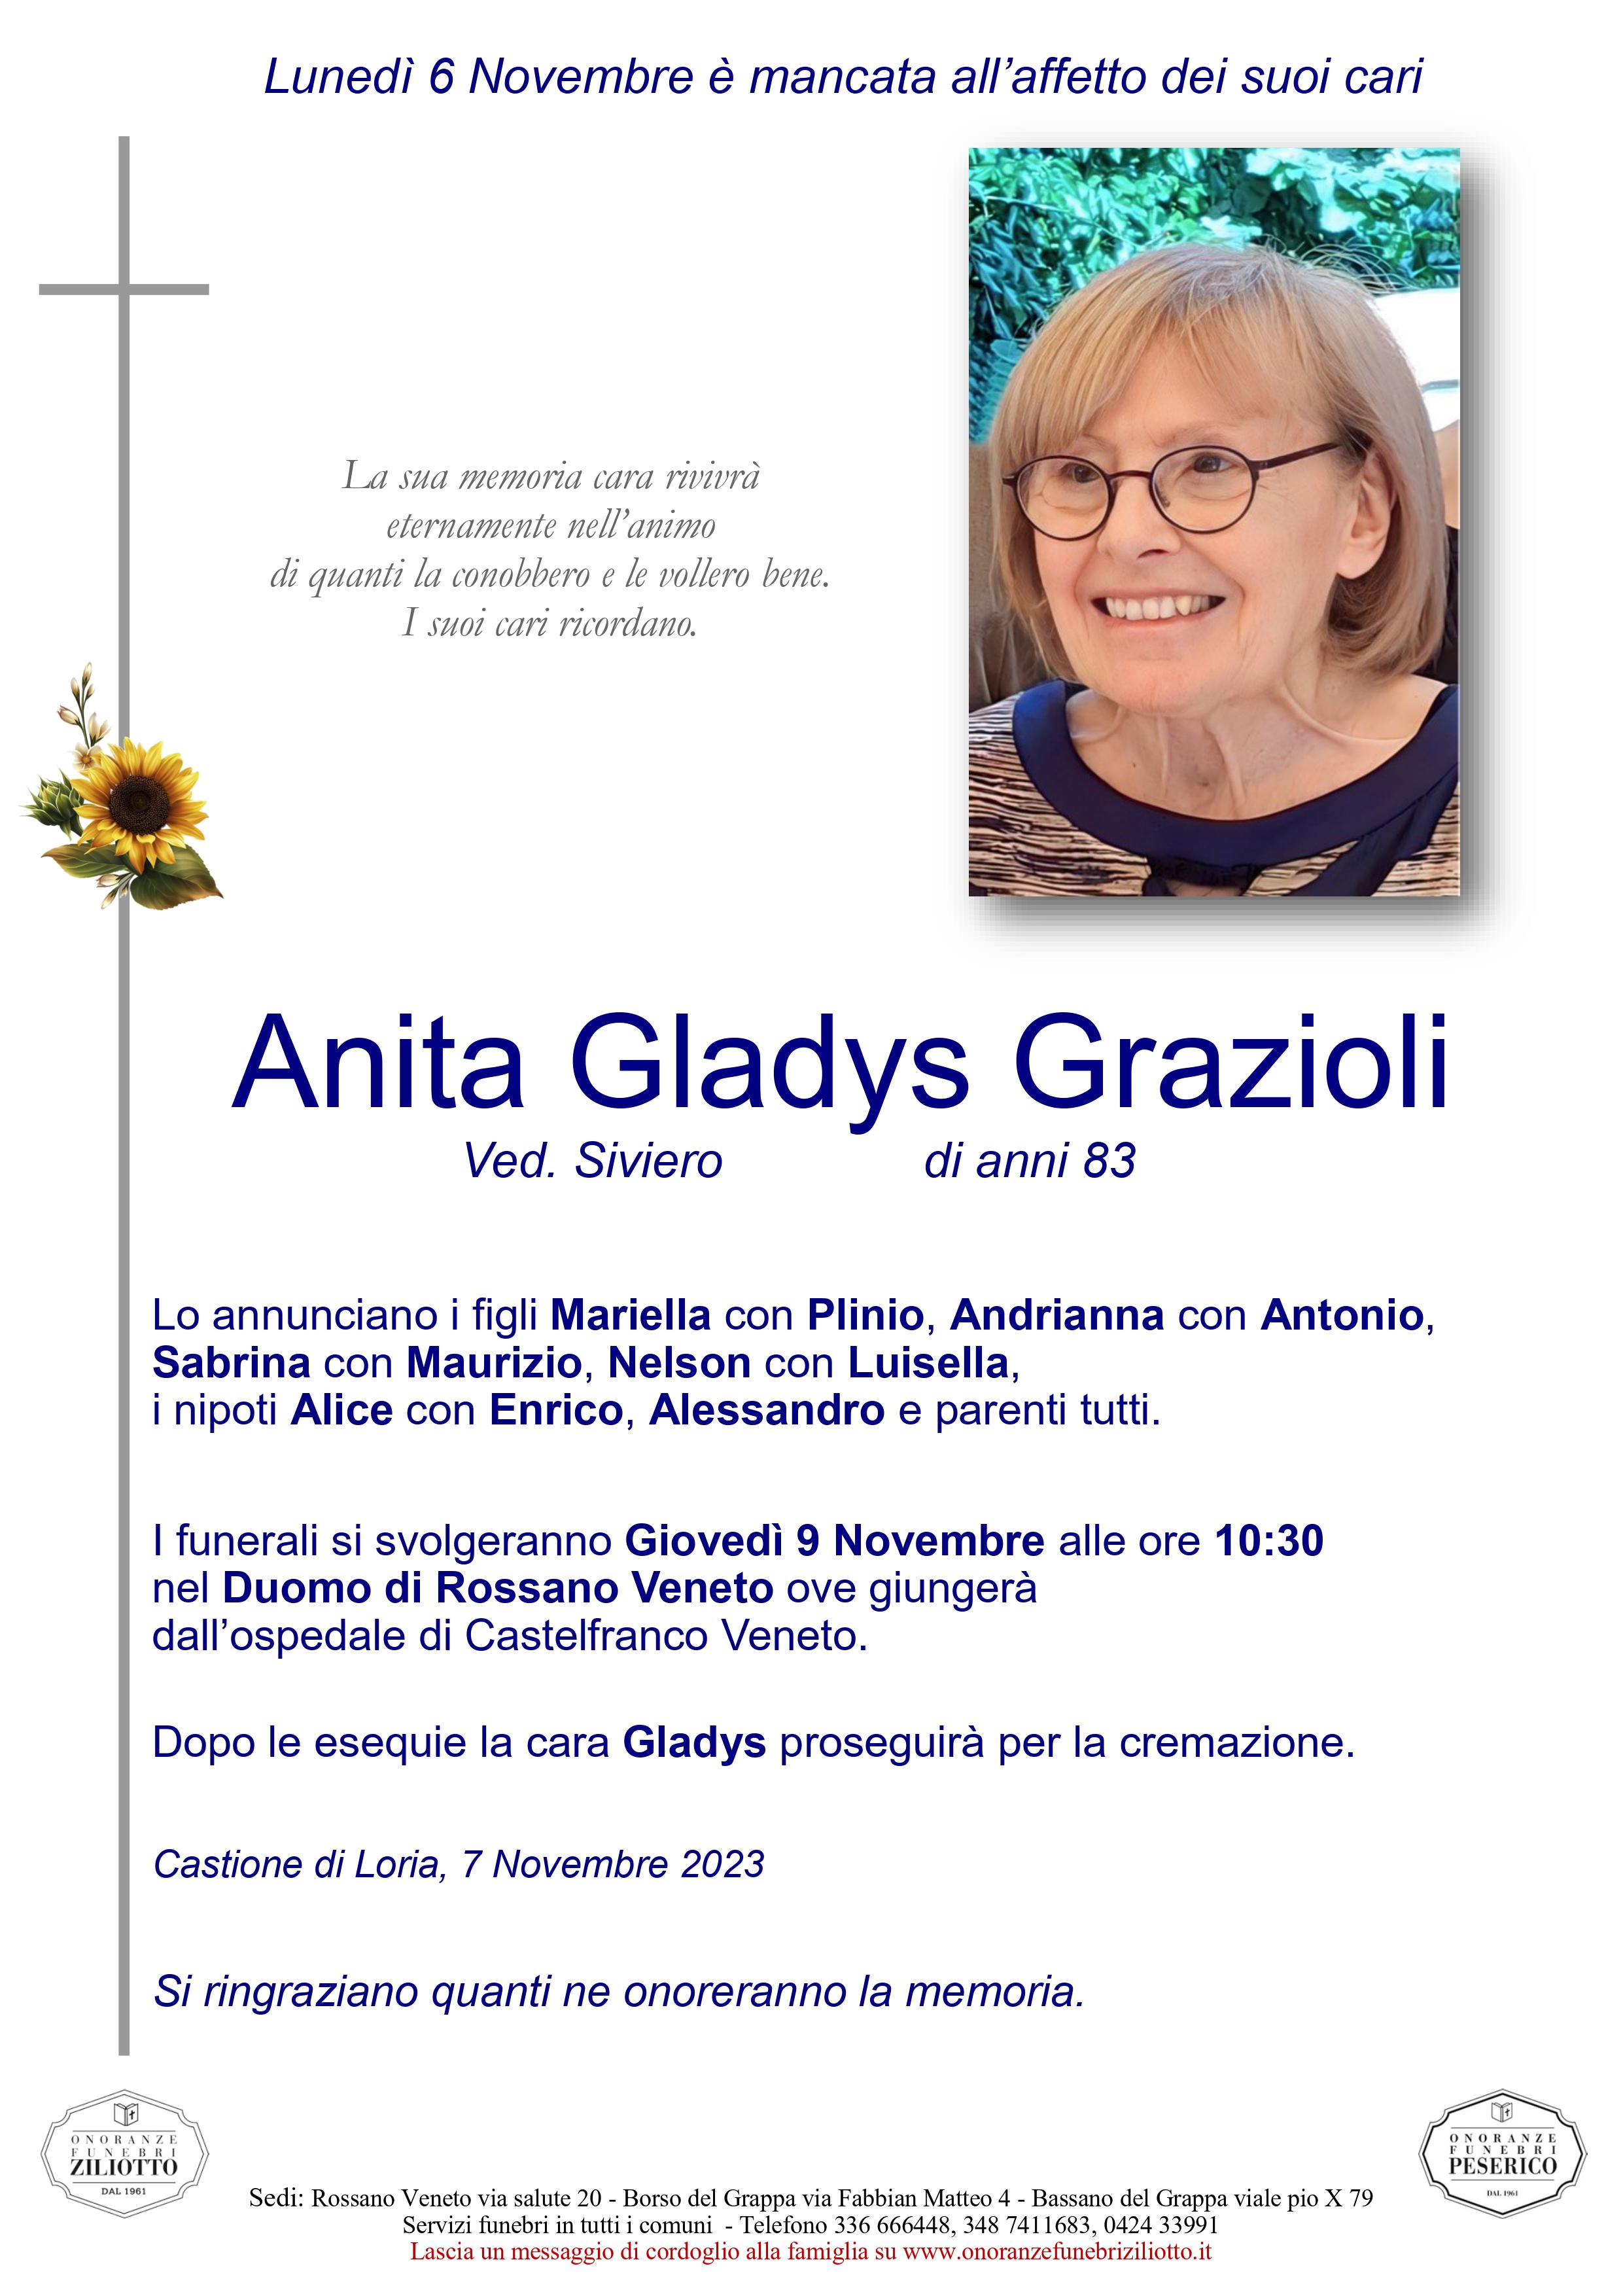 Anita Gladys Grazioli - 83 anni - Castione di Loria